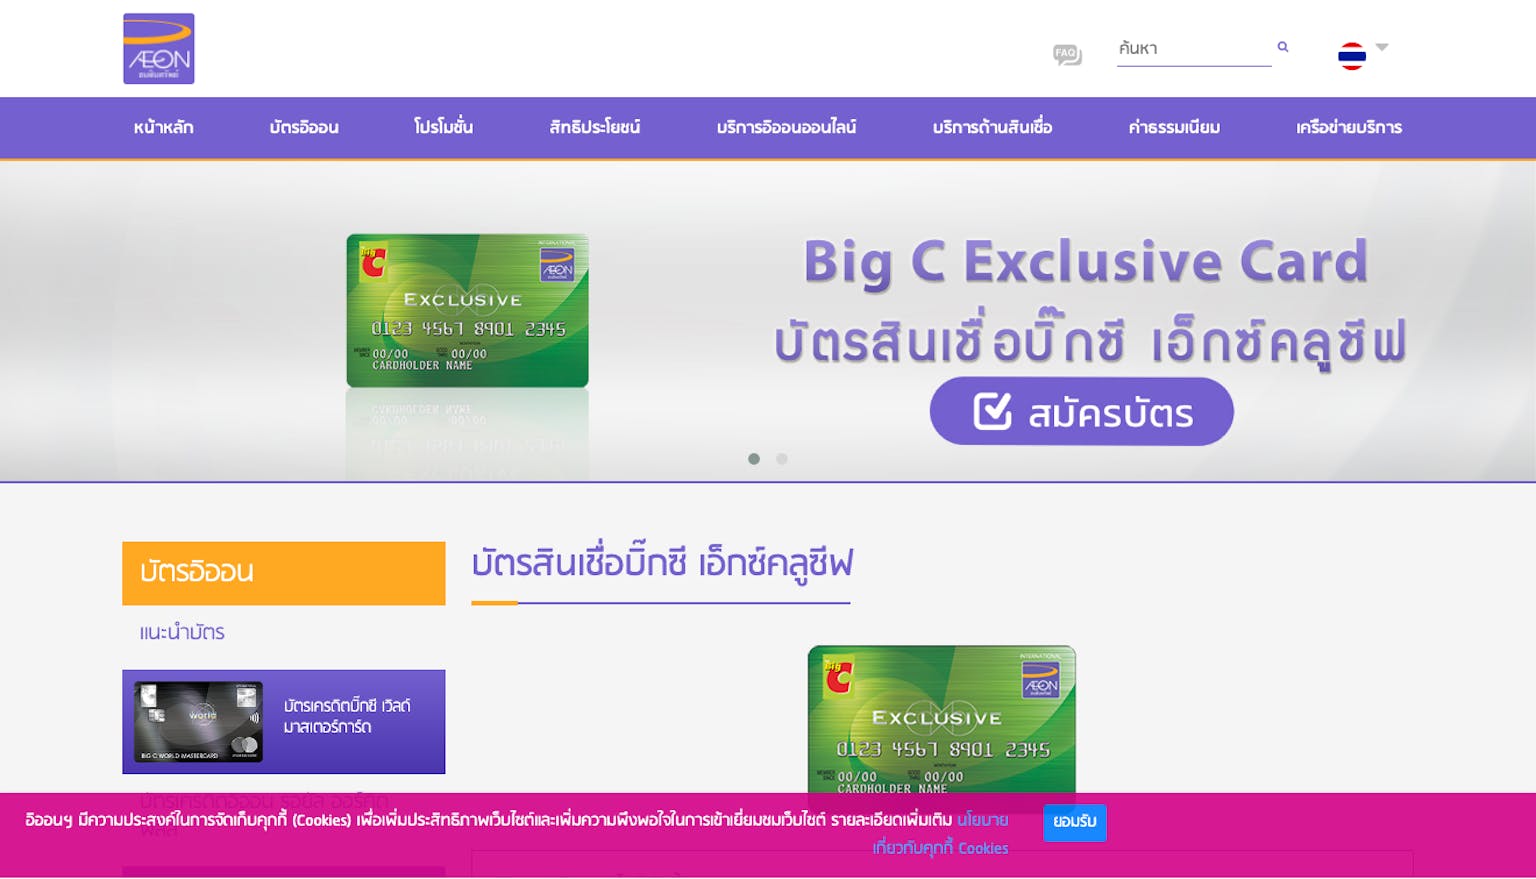 ฟรีแลนซ์ไม่มีสลิปเงินเดือนสามารถสมัครบัตรสินเชื่อบิ๊กซีเอกซ์คลูซีฟได้ไหมครับ?  | Moneyduck Thailand